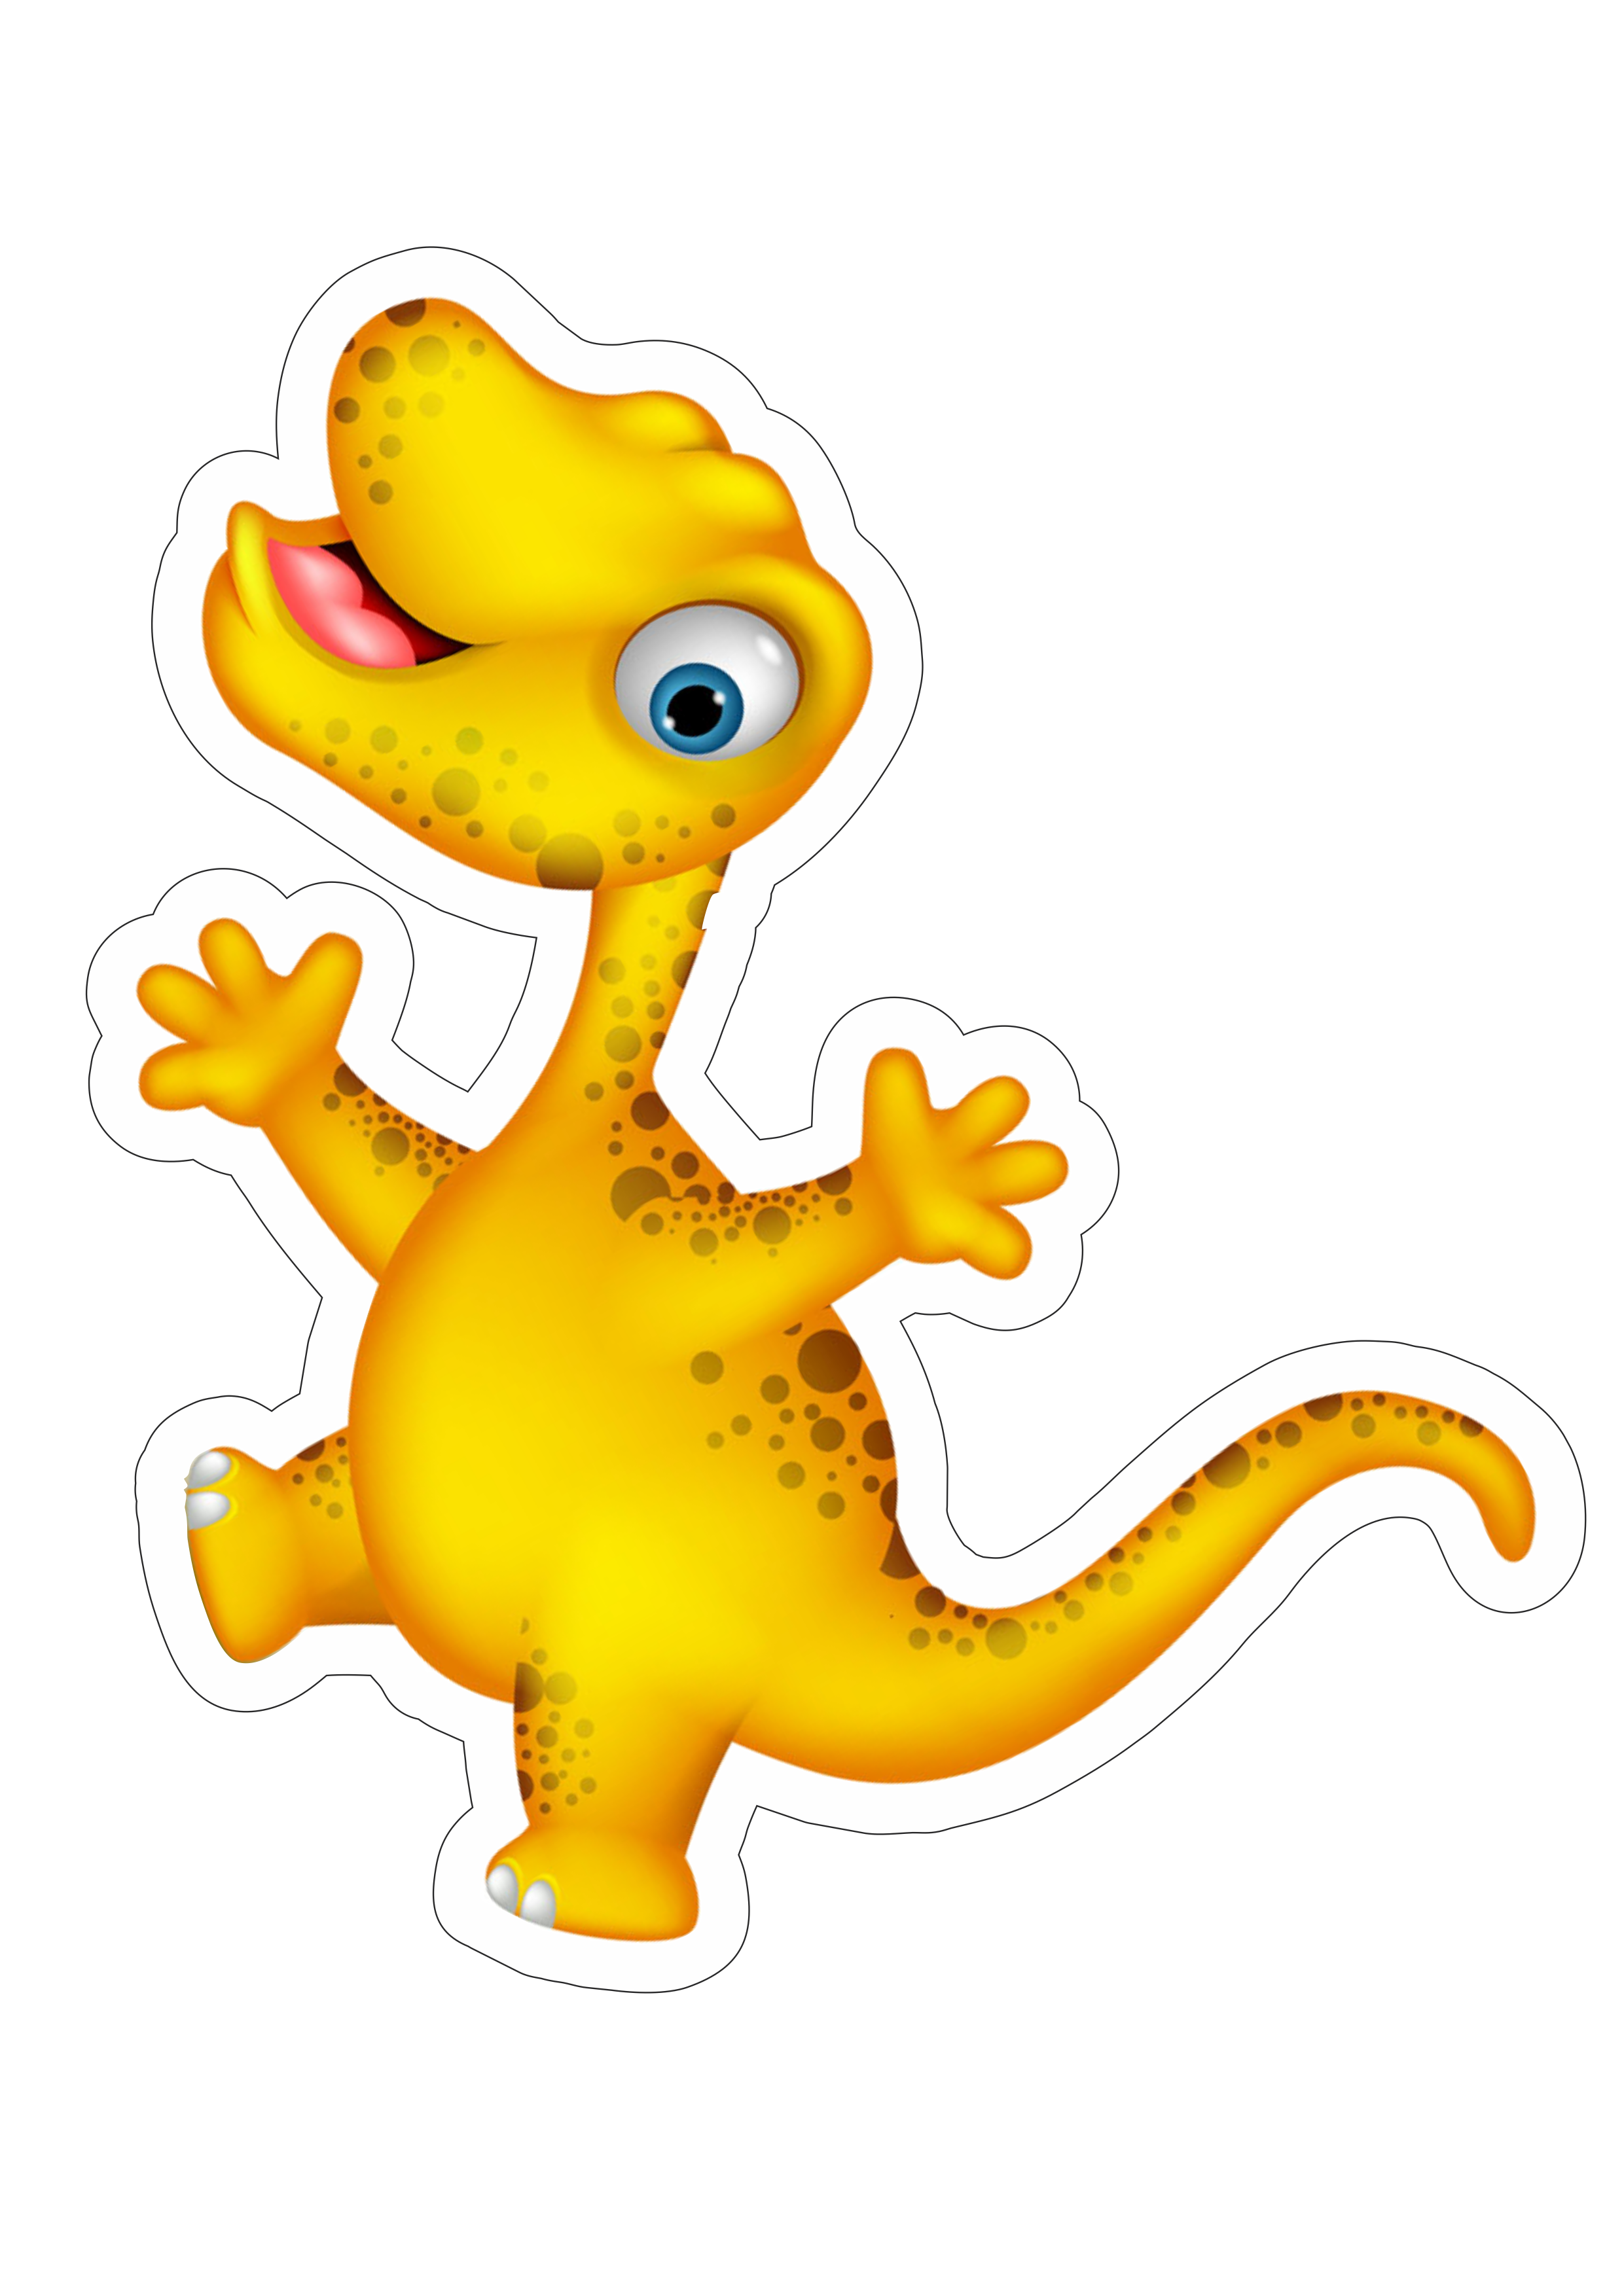 Baby Dinossauro maluco imagem sem fundo desenho engraçado infantil com contorno cute fofinho lagartixa png